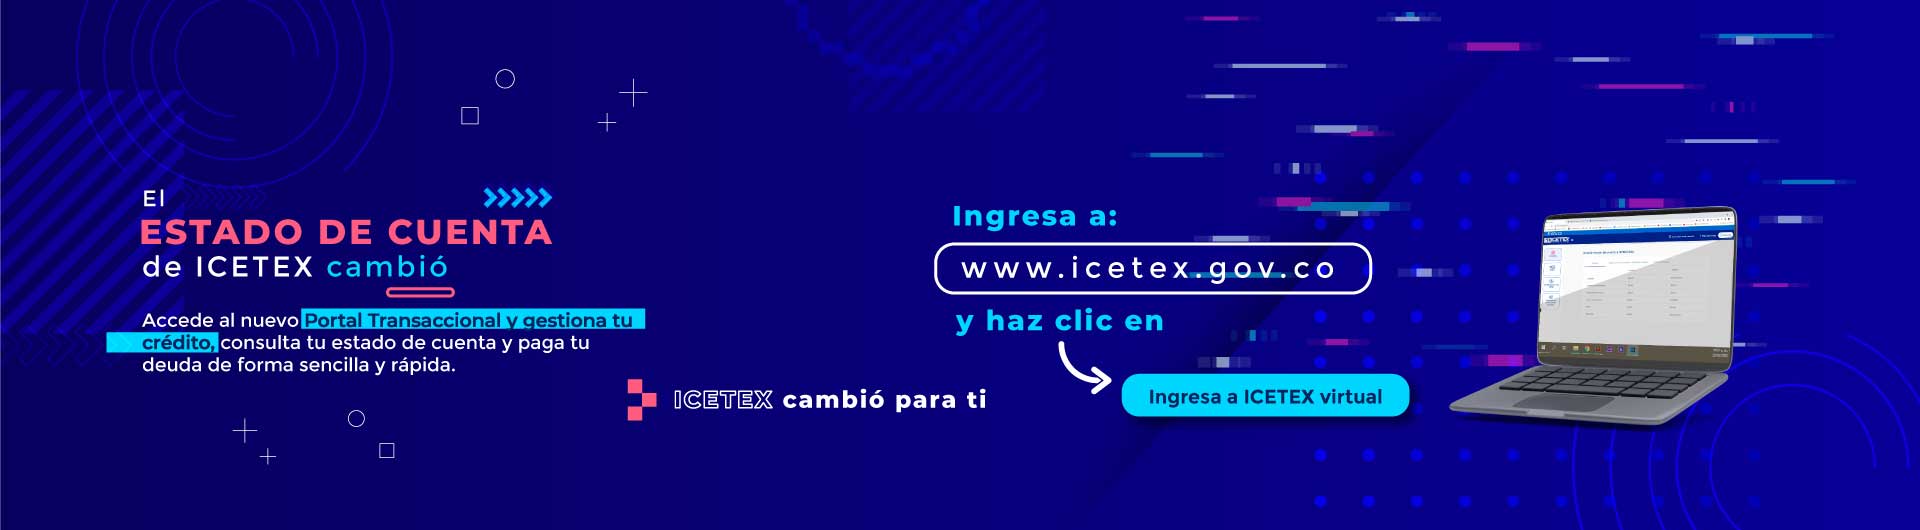 El estado de cuenta de ICETEX cambió, ingresa a ICETEX virtual